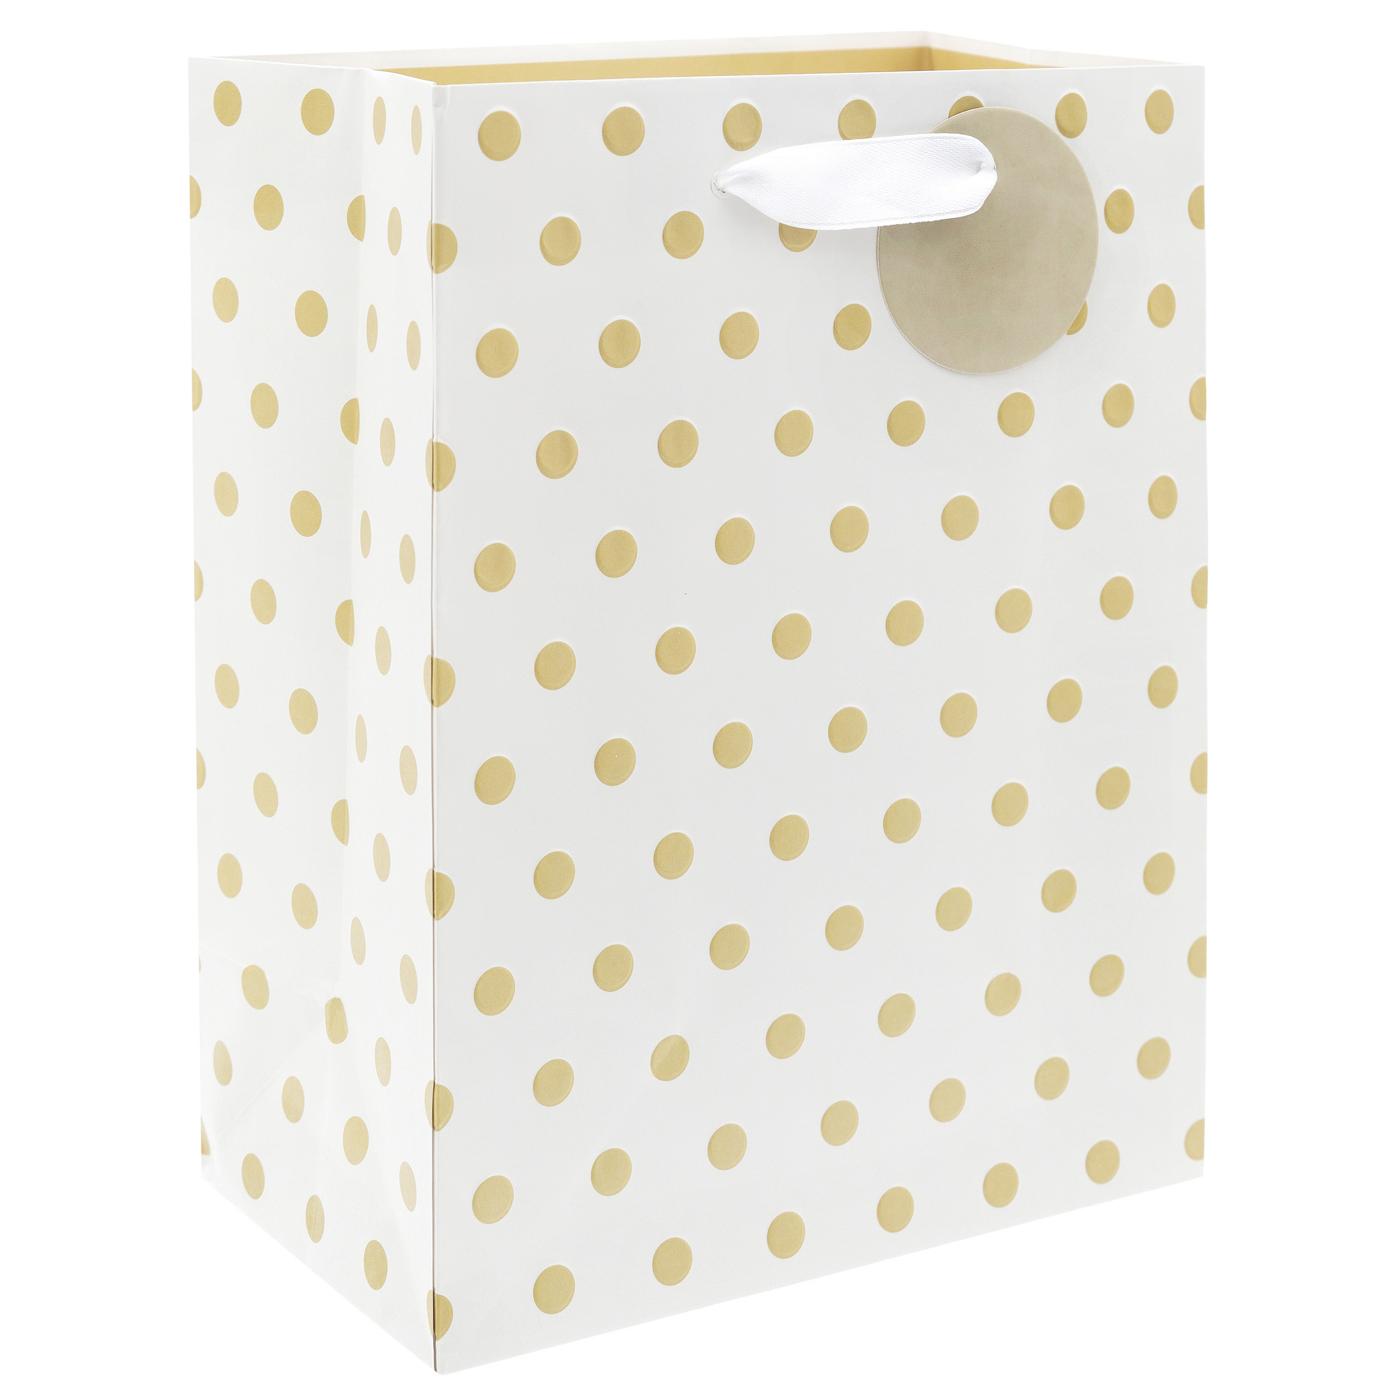 IG Design Gold Dots Paper Gift Bag; image 2 of 2